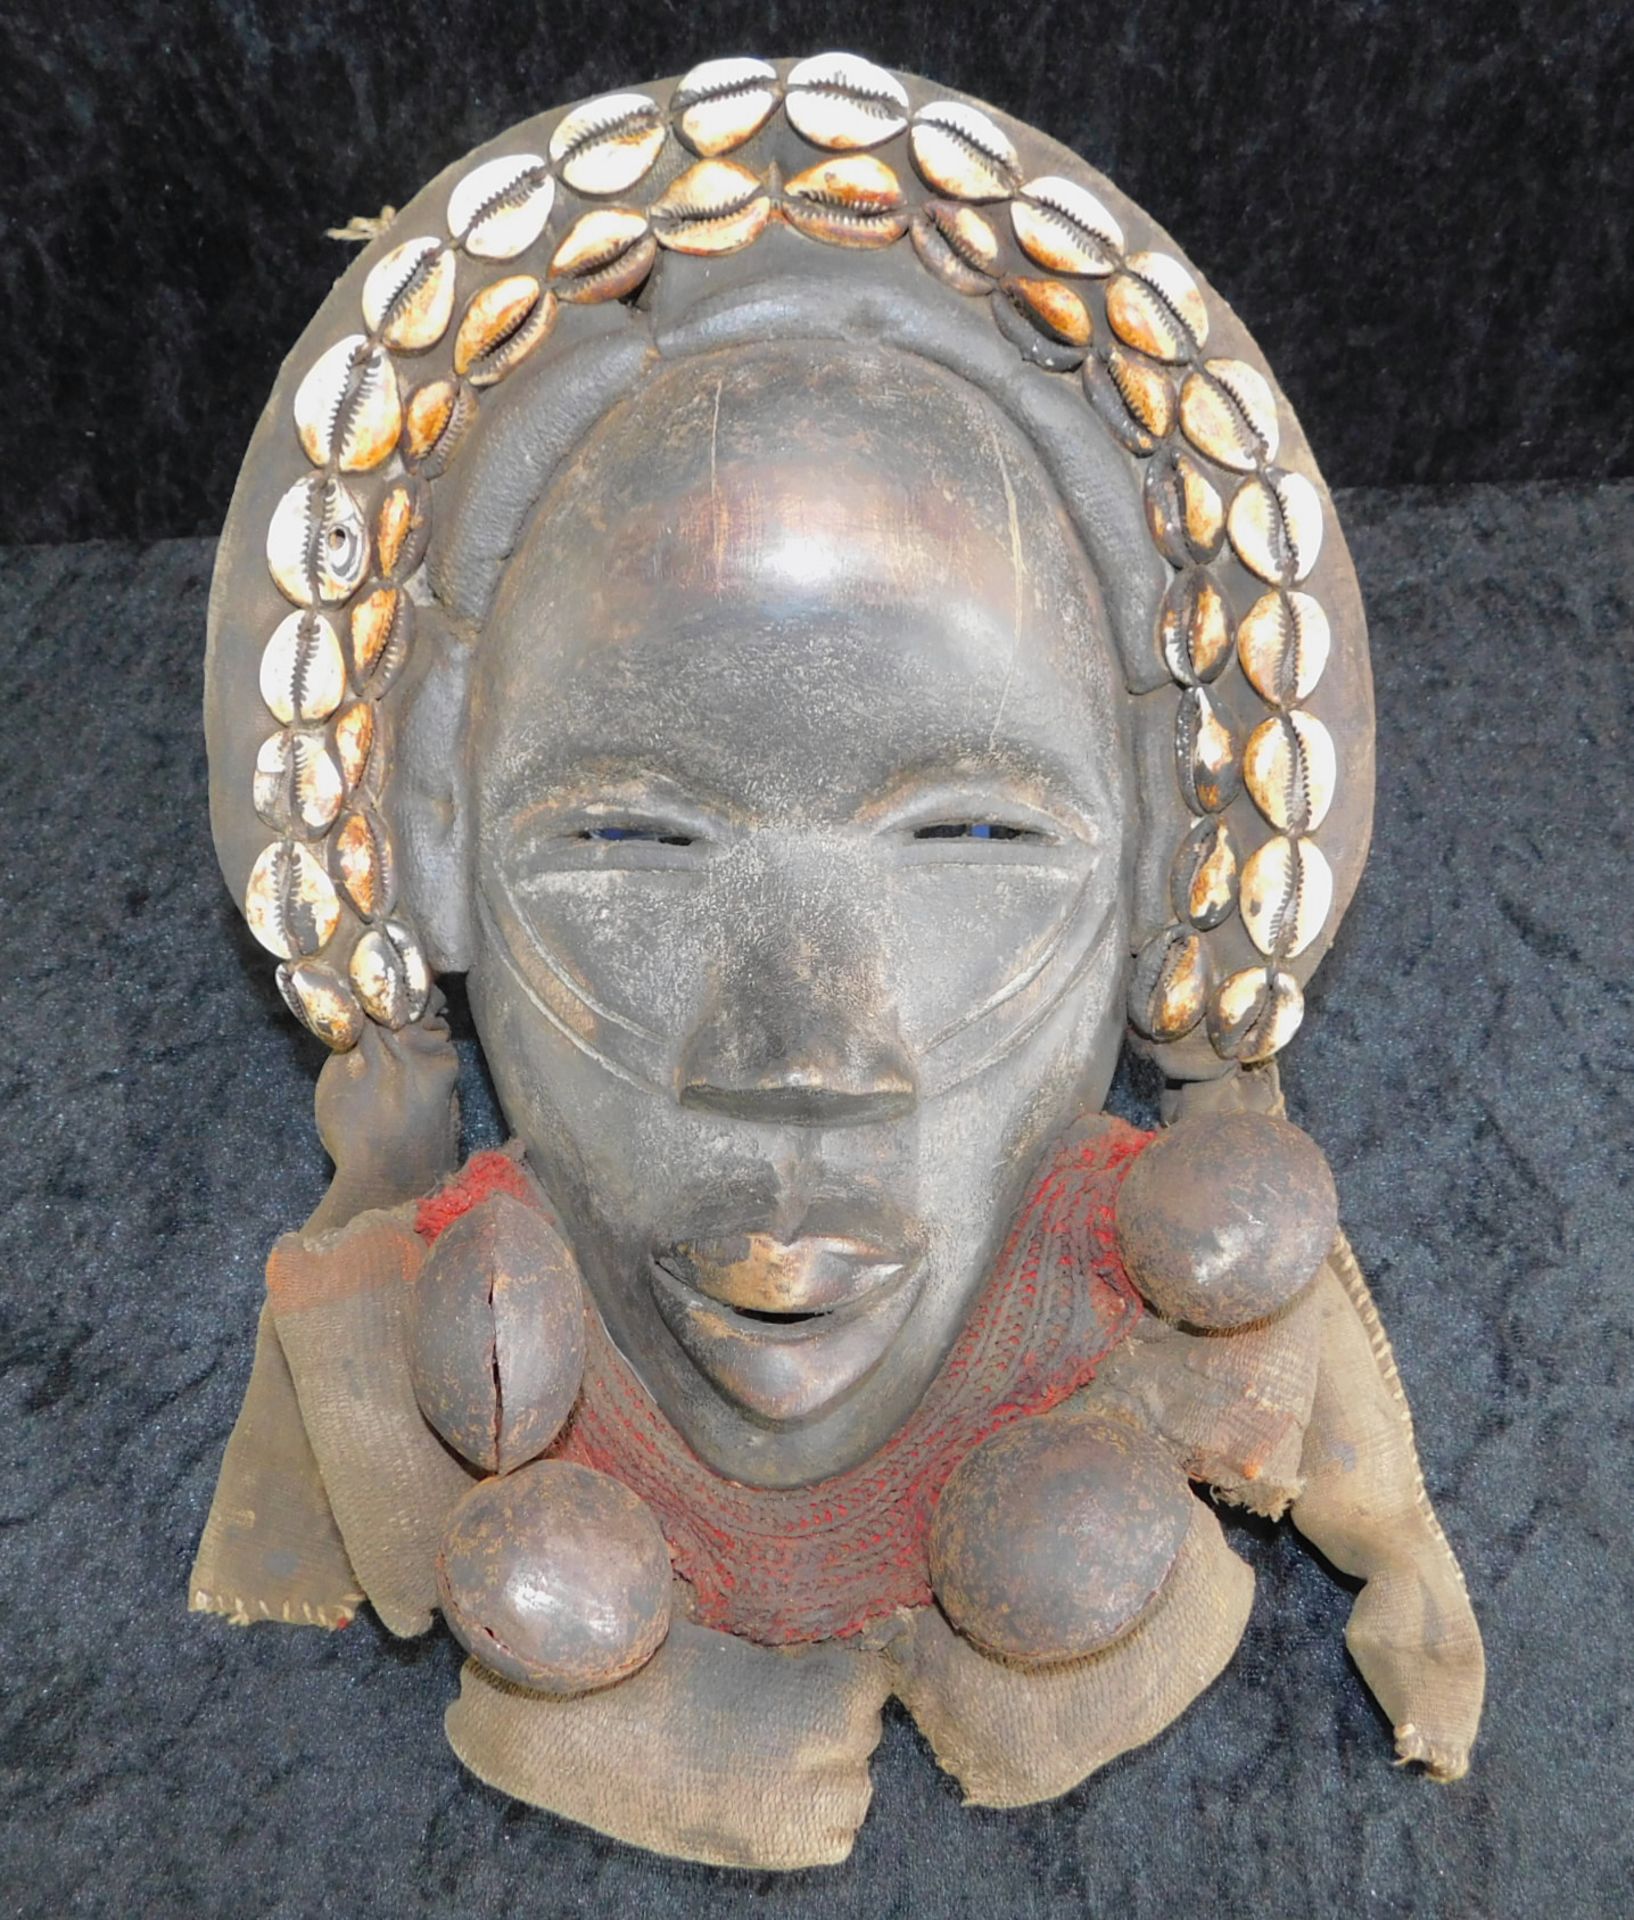 Traditionelle Dan Maske, Liberia/Elfenbeinküste, Holz geschnitzt mit Kaurieschnecken